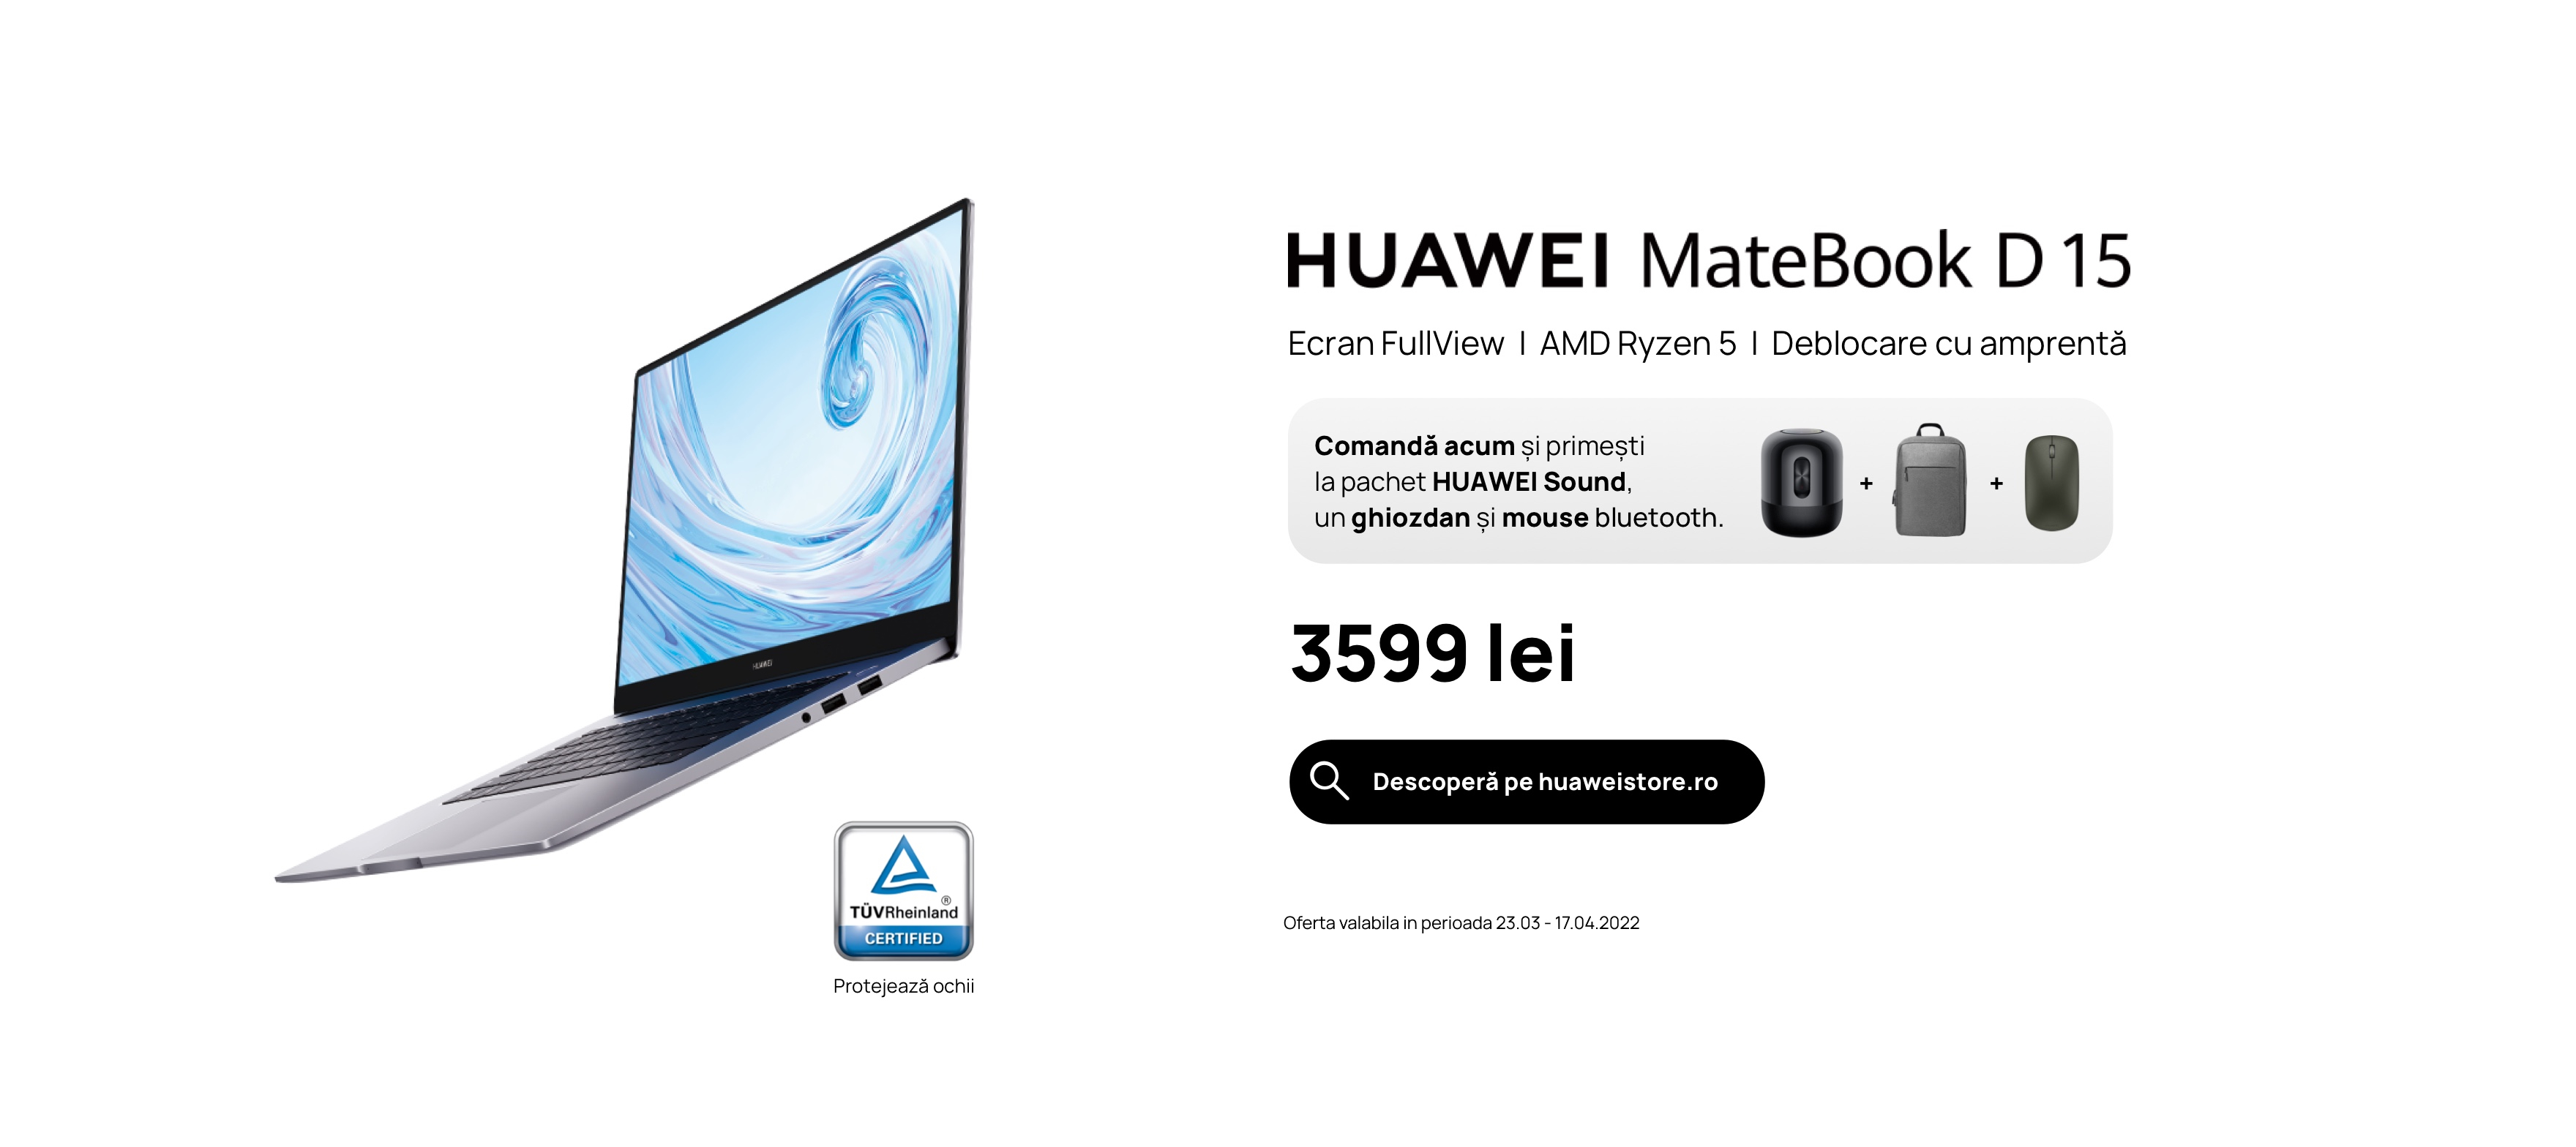 HUAWEI MateBook D 15 AMD este laptop-ul ideal pentru orice scenariu de utilizare